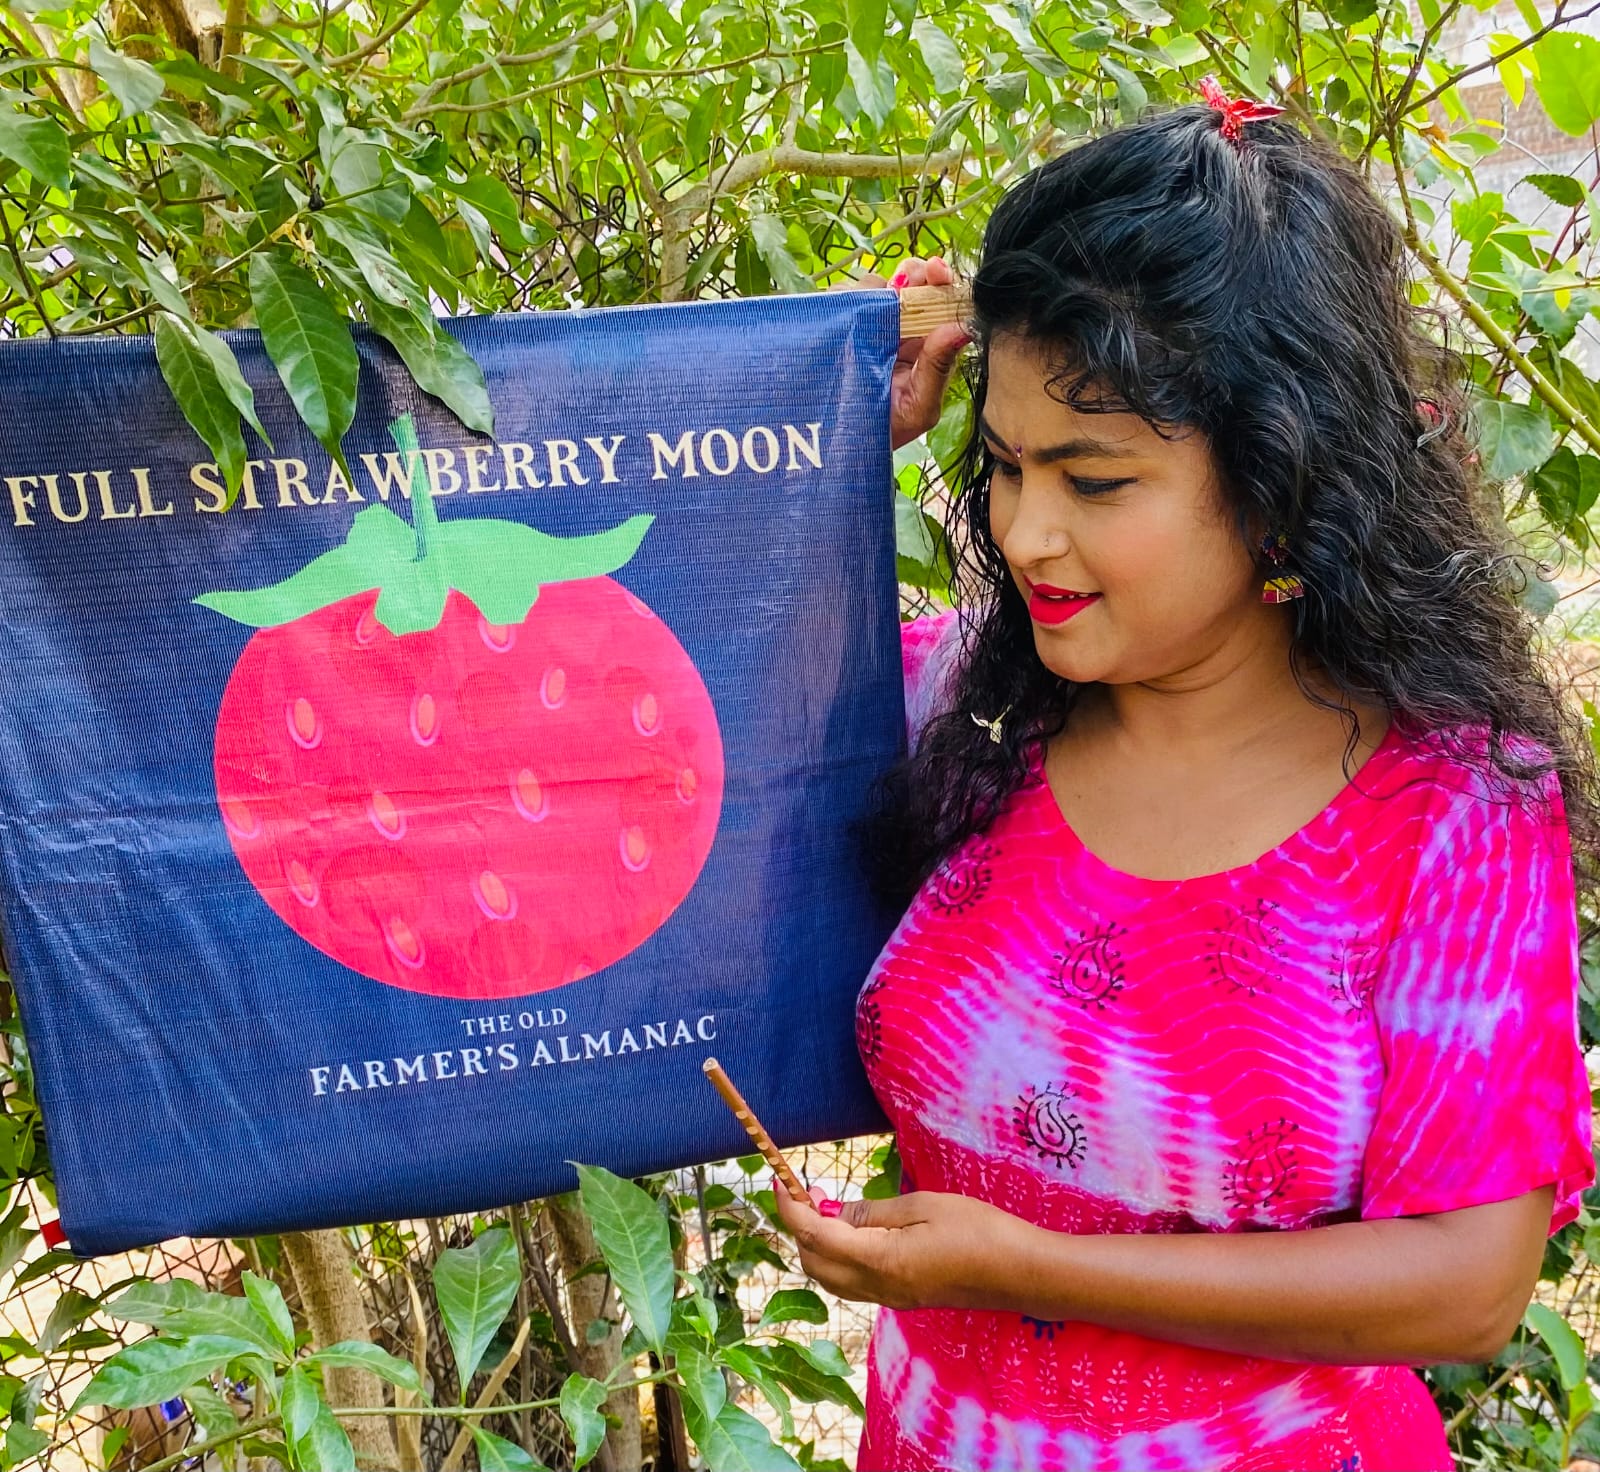 Strawberry Moon : आज आसमान में दिखेगा अद्भुत नजारा, ईस्‍ट में स्ट्रॉबेरी मून तो वेस्‍ट में वीनस एट ग्रेटेस्‍ट इलोंगेशन बिखेरेंगे चमक